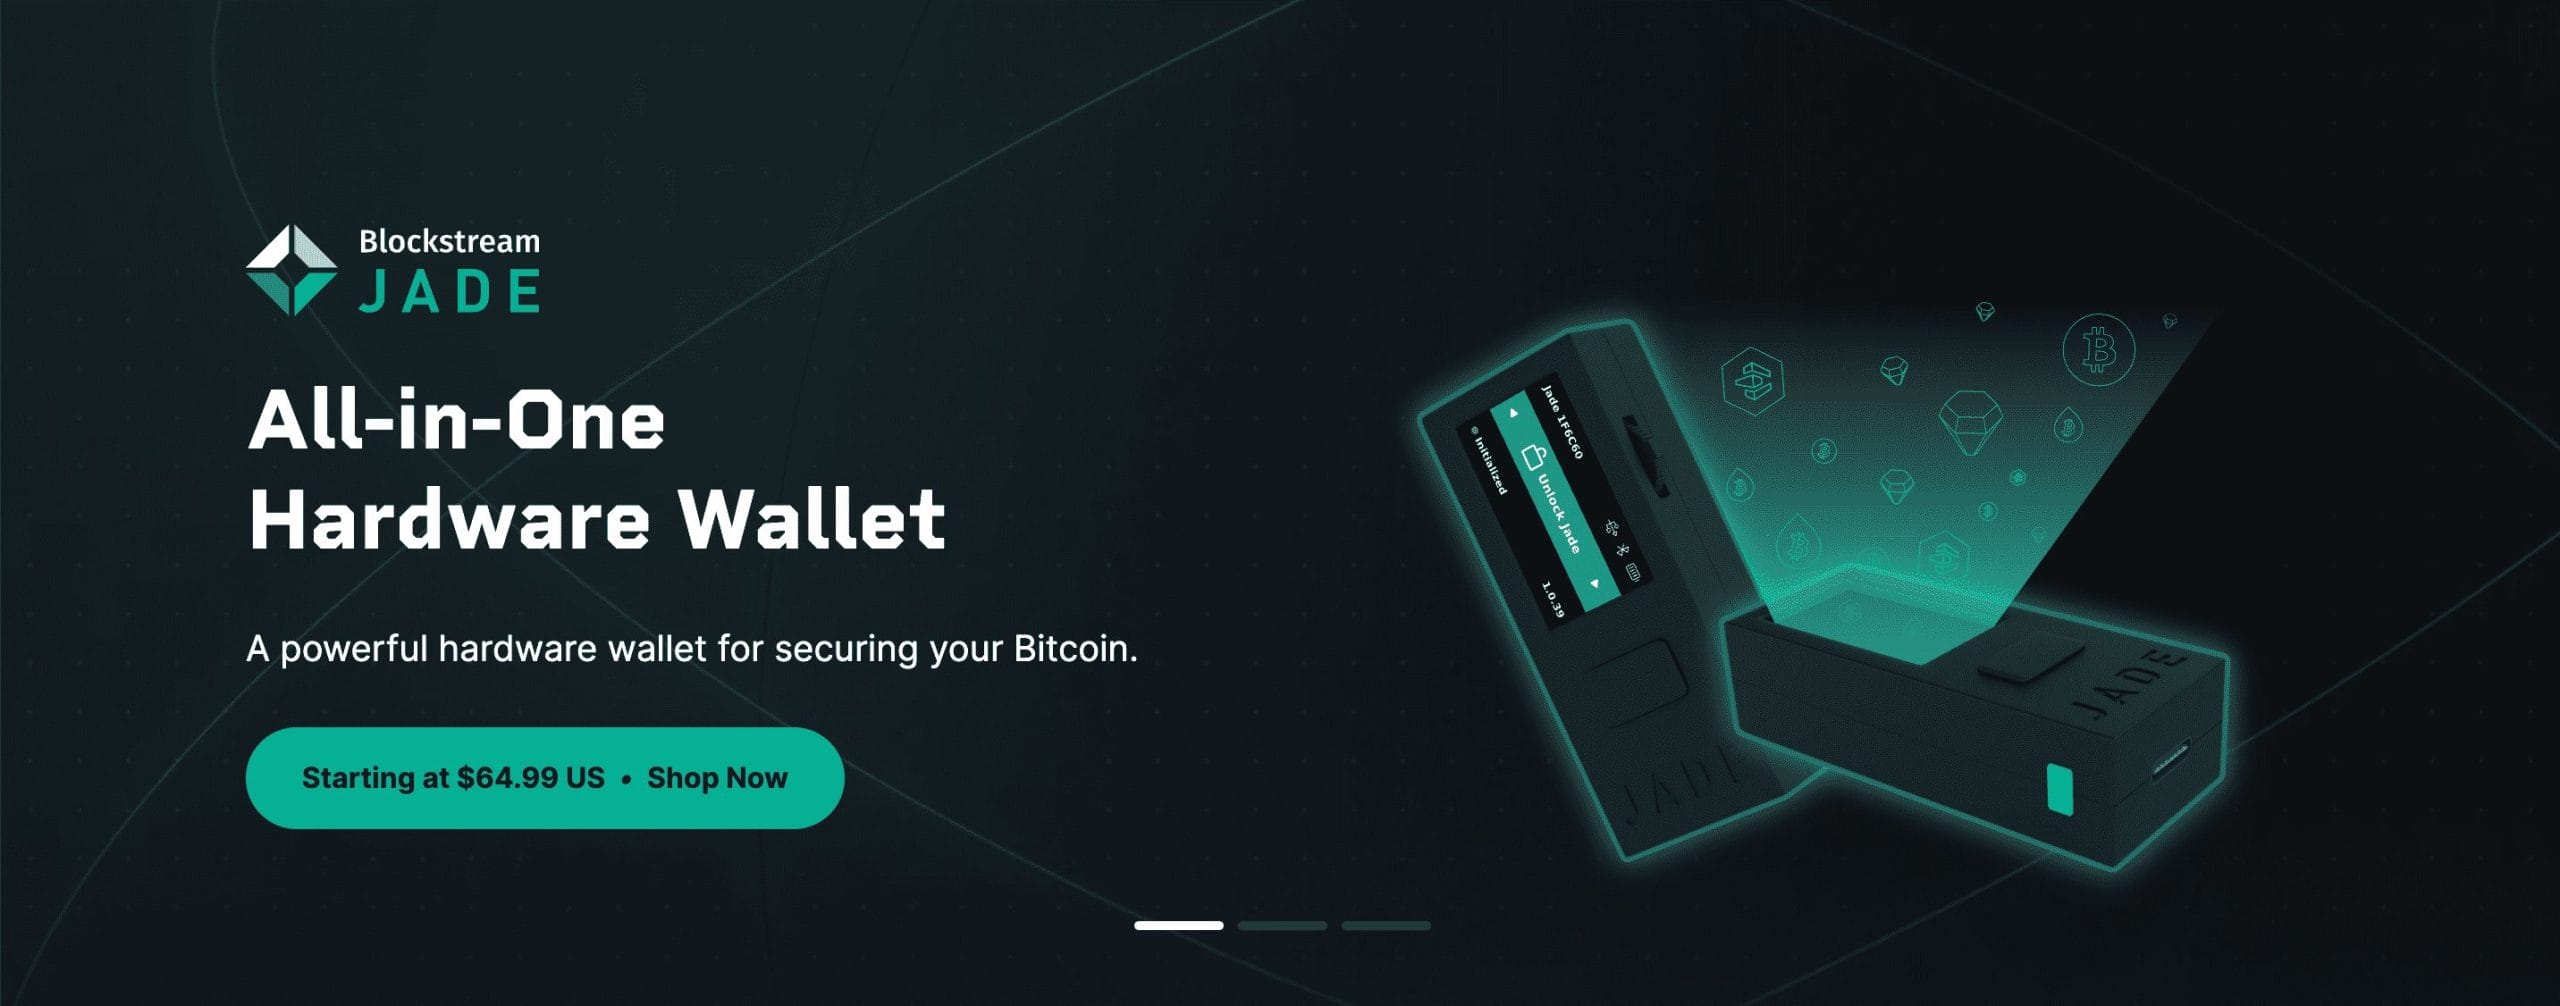 Blockstream Jade wallet